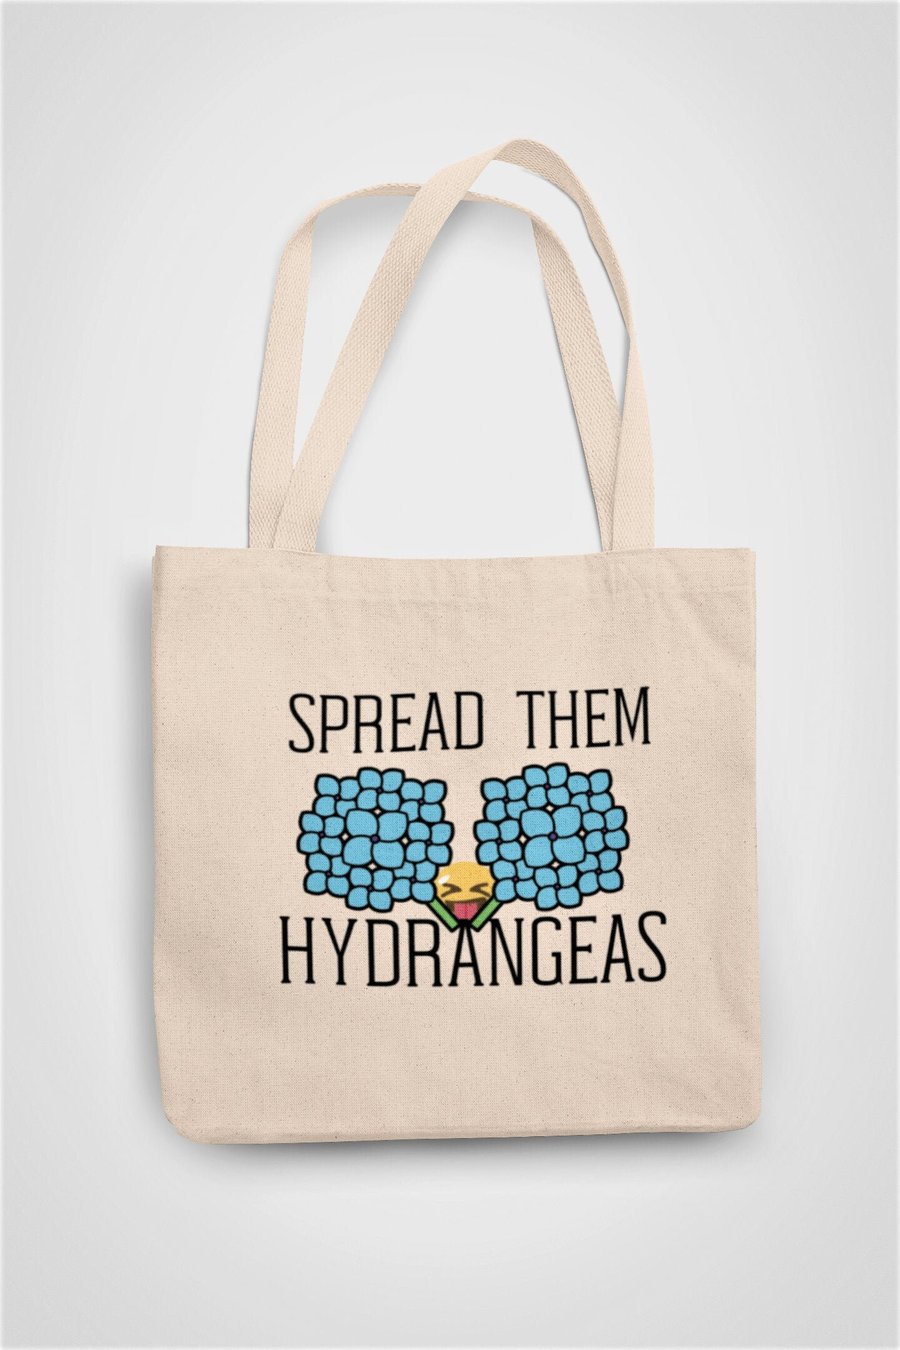 Spread Them Hydrangeas Outdoor Garden Tote Bag Reusable Cotton bag - Novelty 